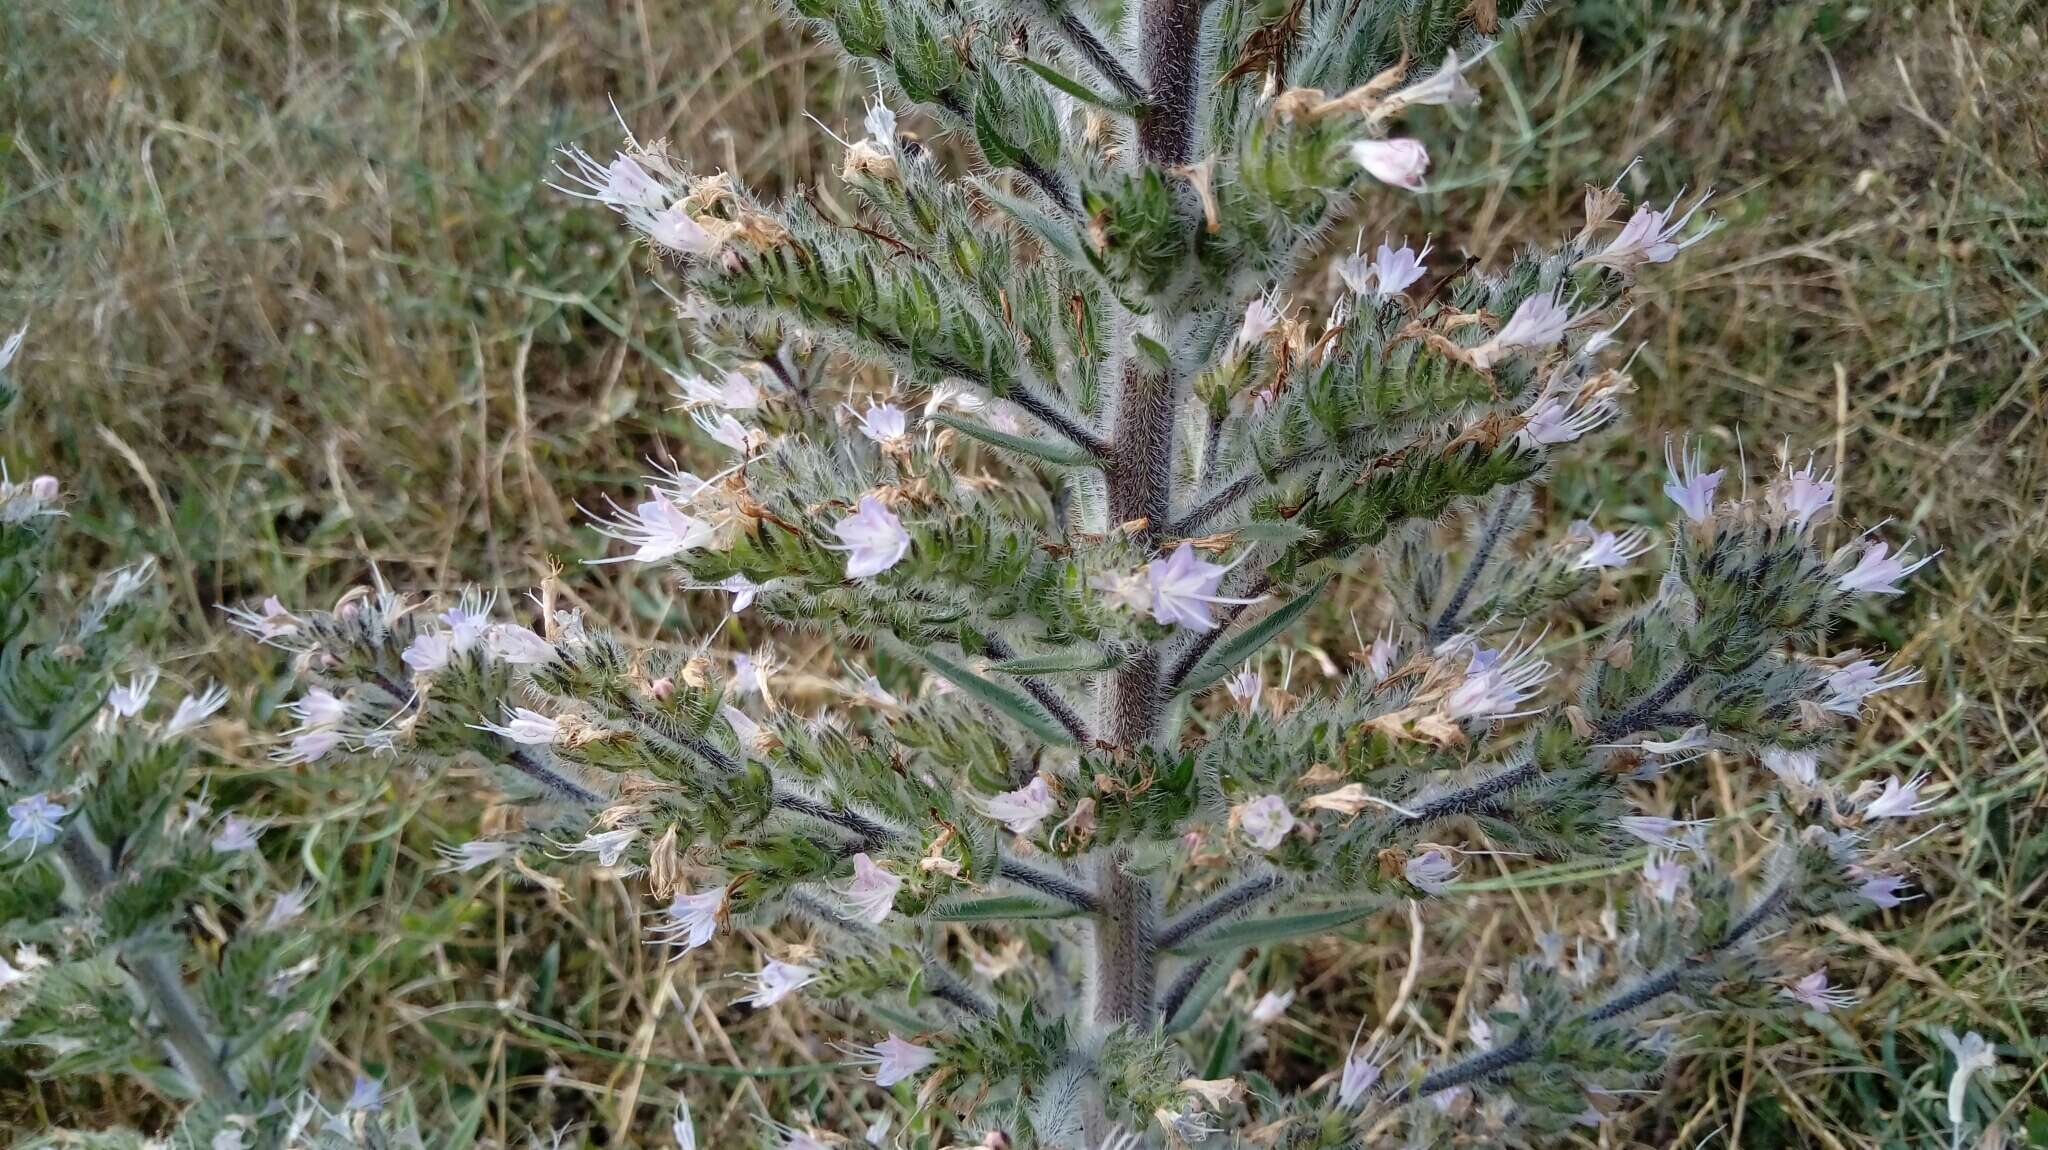 Image of Echium italicum subsp. biebersteinii (Lacaita) Greuter & Burdet